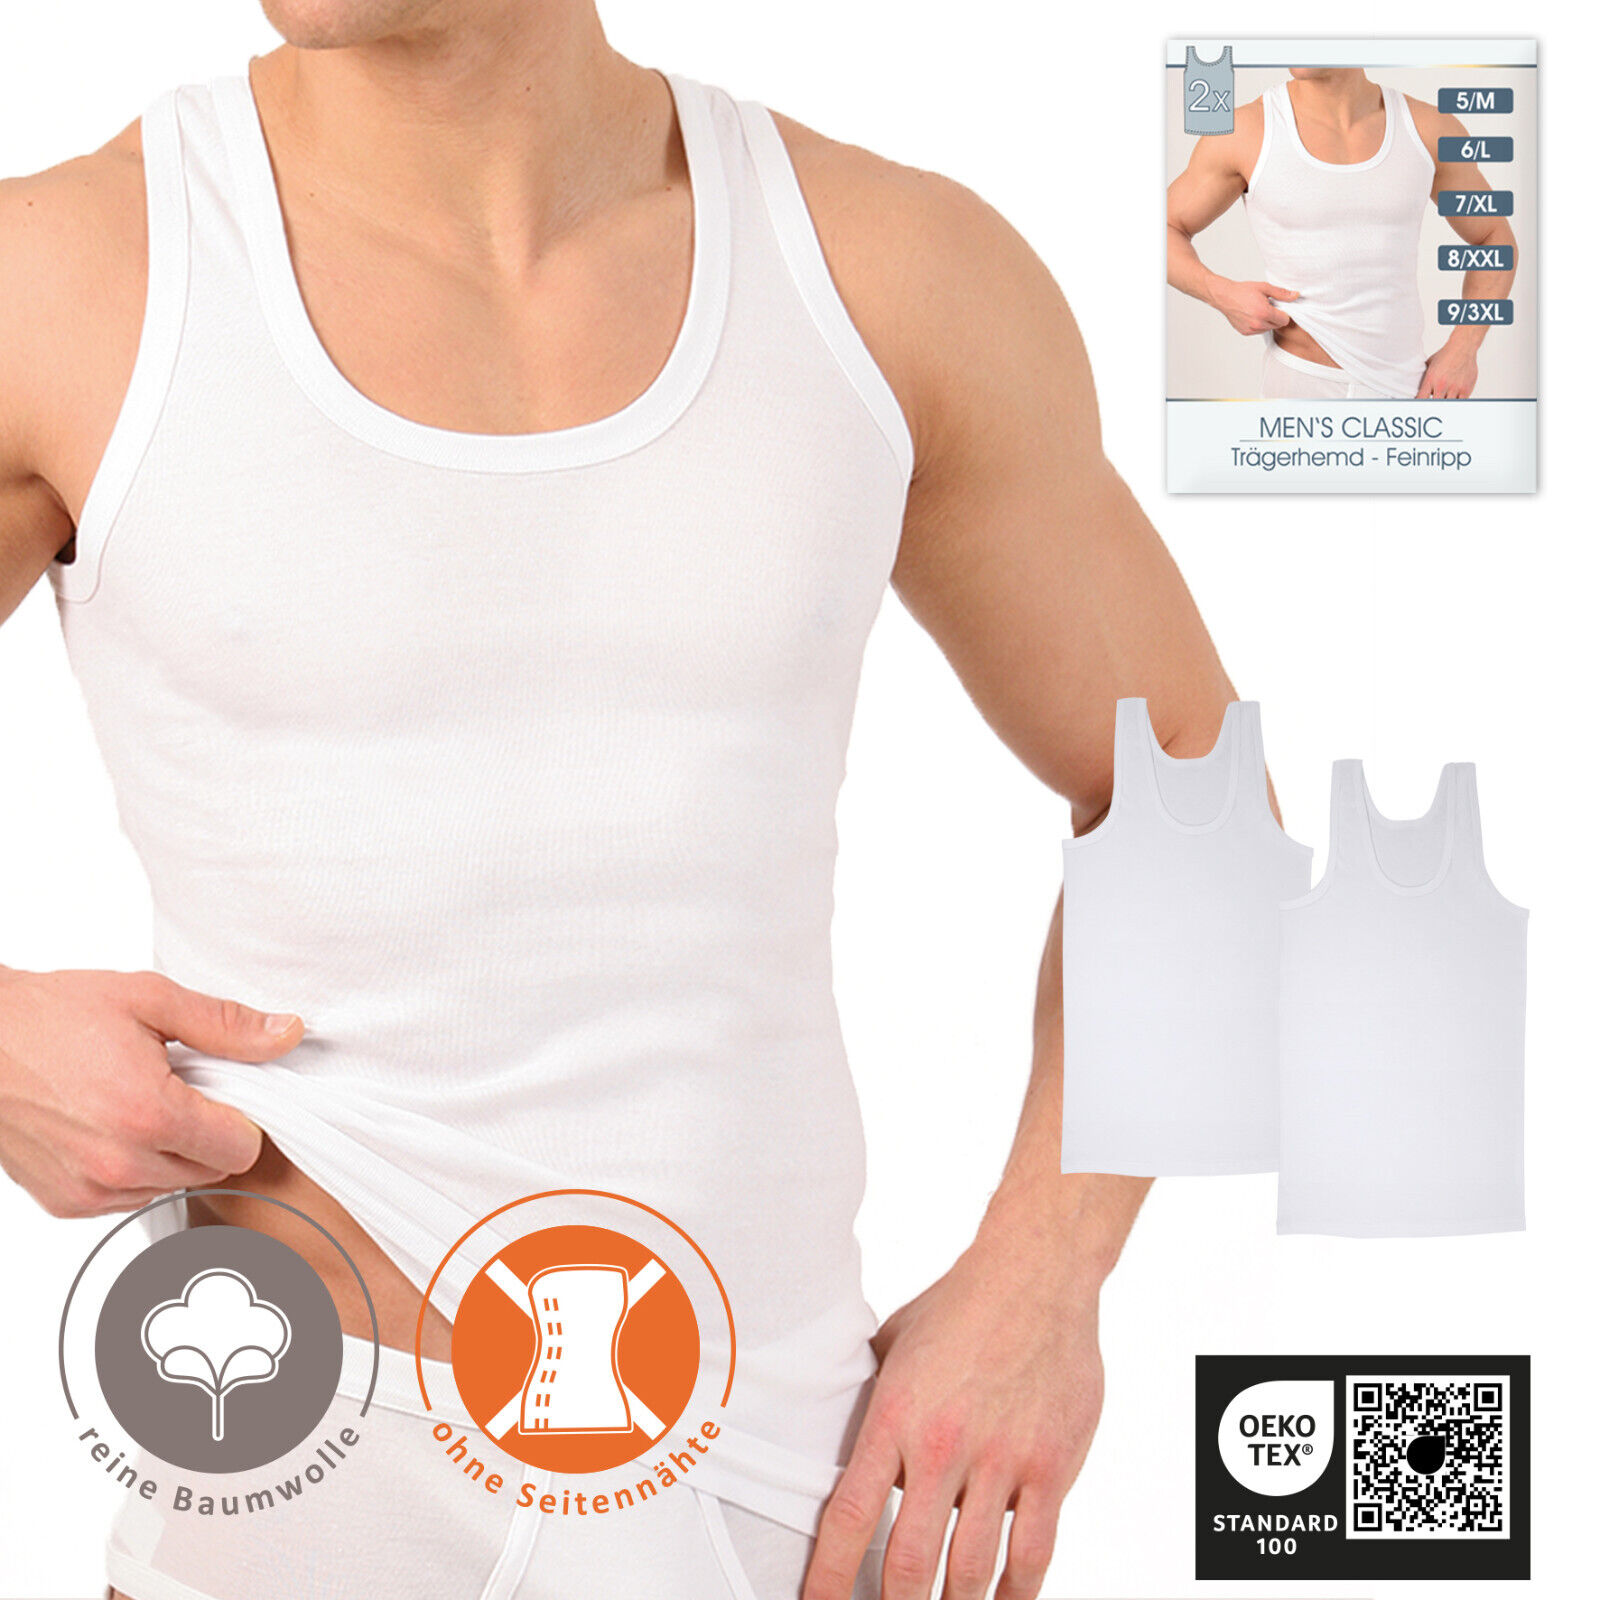 Herren Unterhemden 4-6-10 Pack Achselhemd weiß Feinripp Baumwolle Gr. M -  6XL | eBay